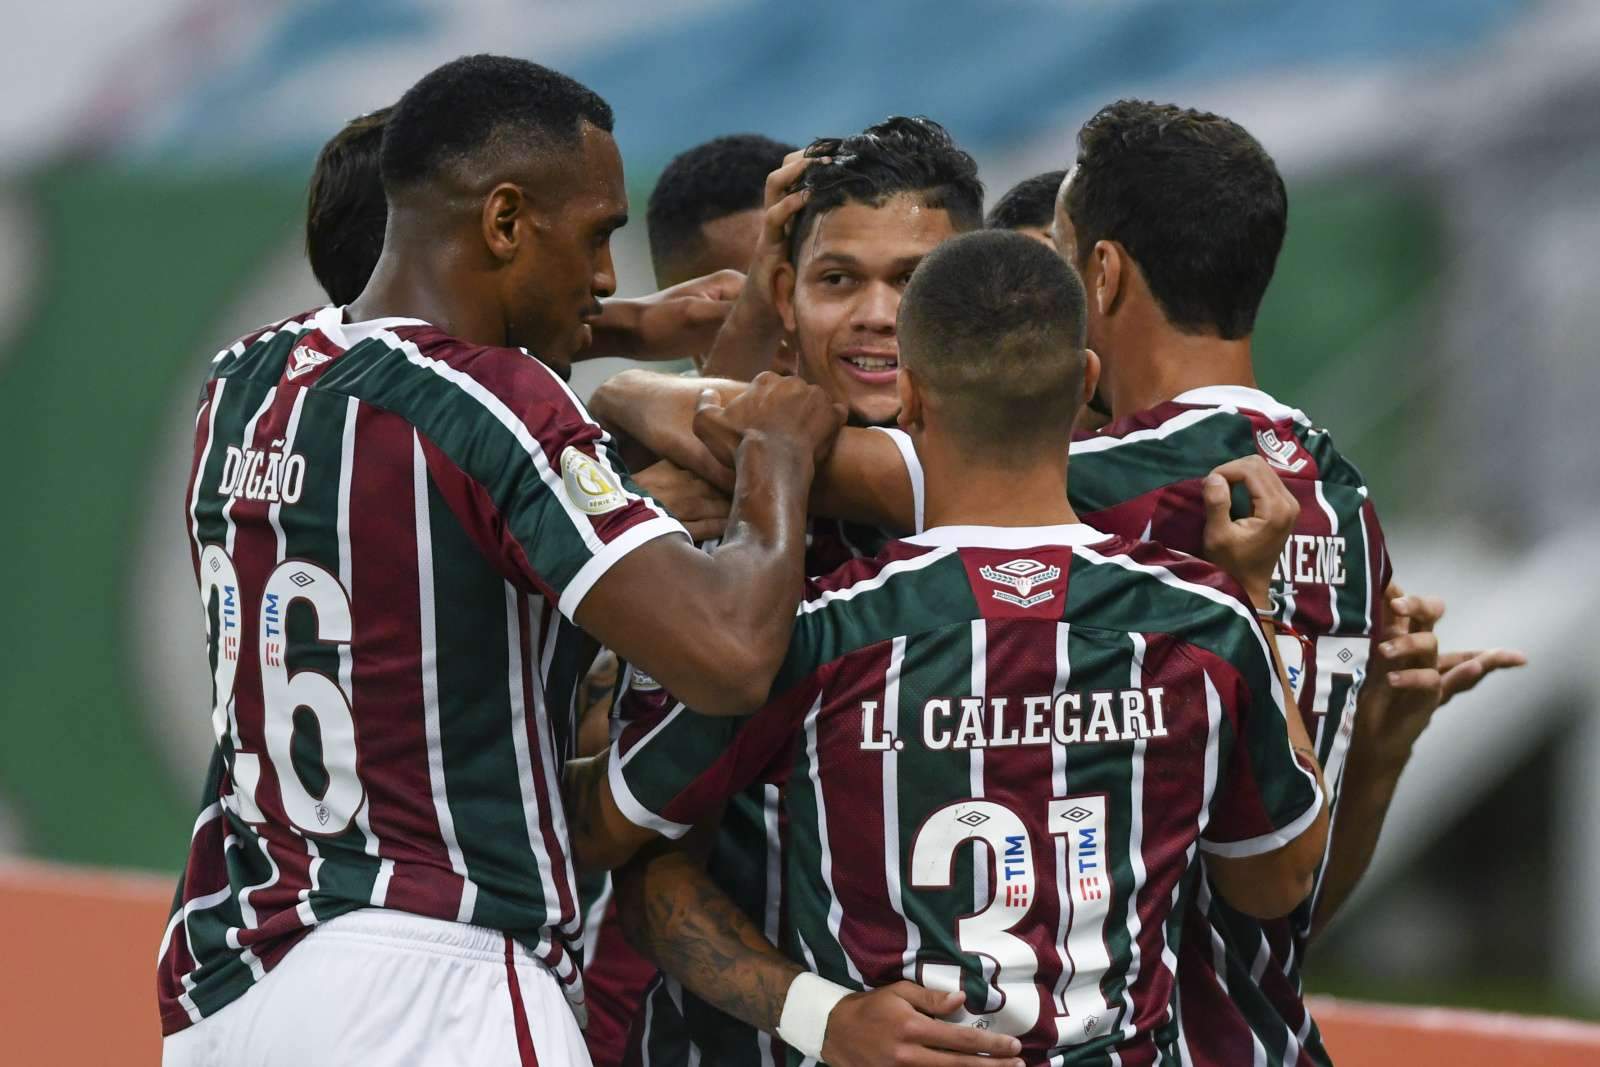 ​Бразильский игрок оригинально отметил гол, намекнув на ограбление директора клуба